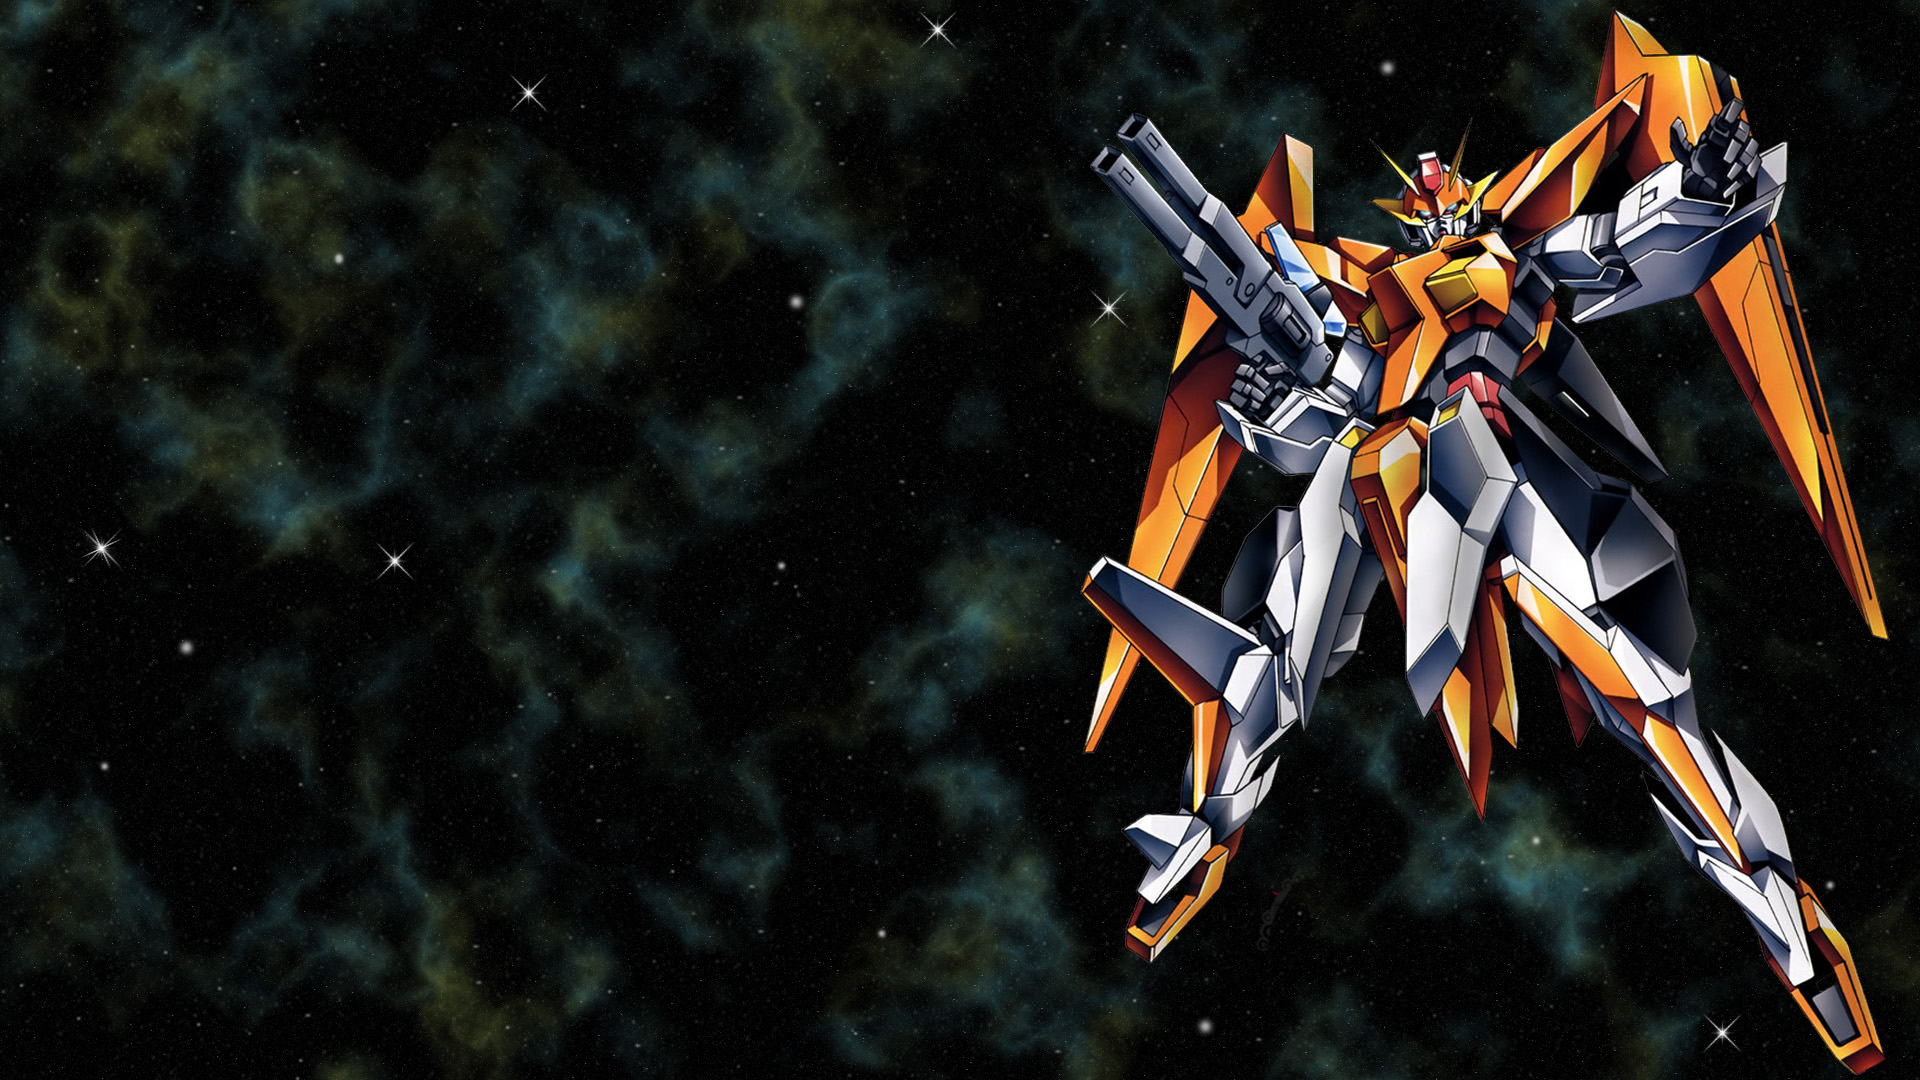 Cool Fire Gundam Anime Wallpaper